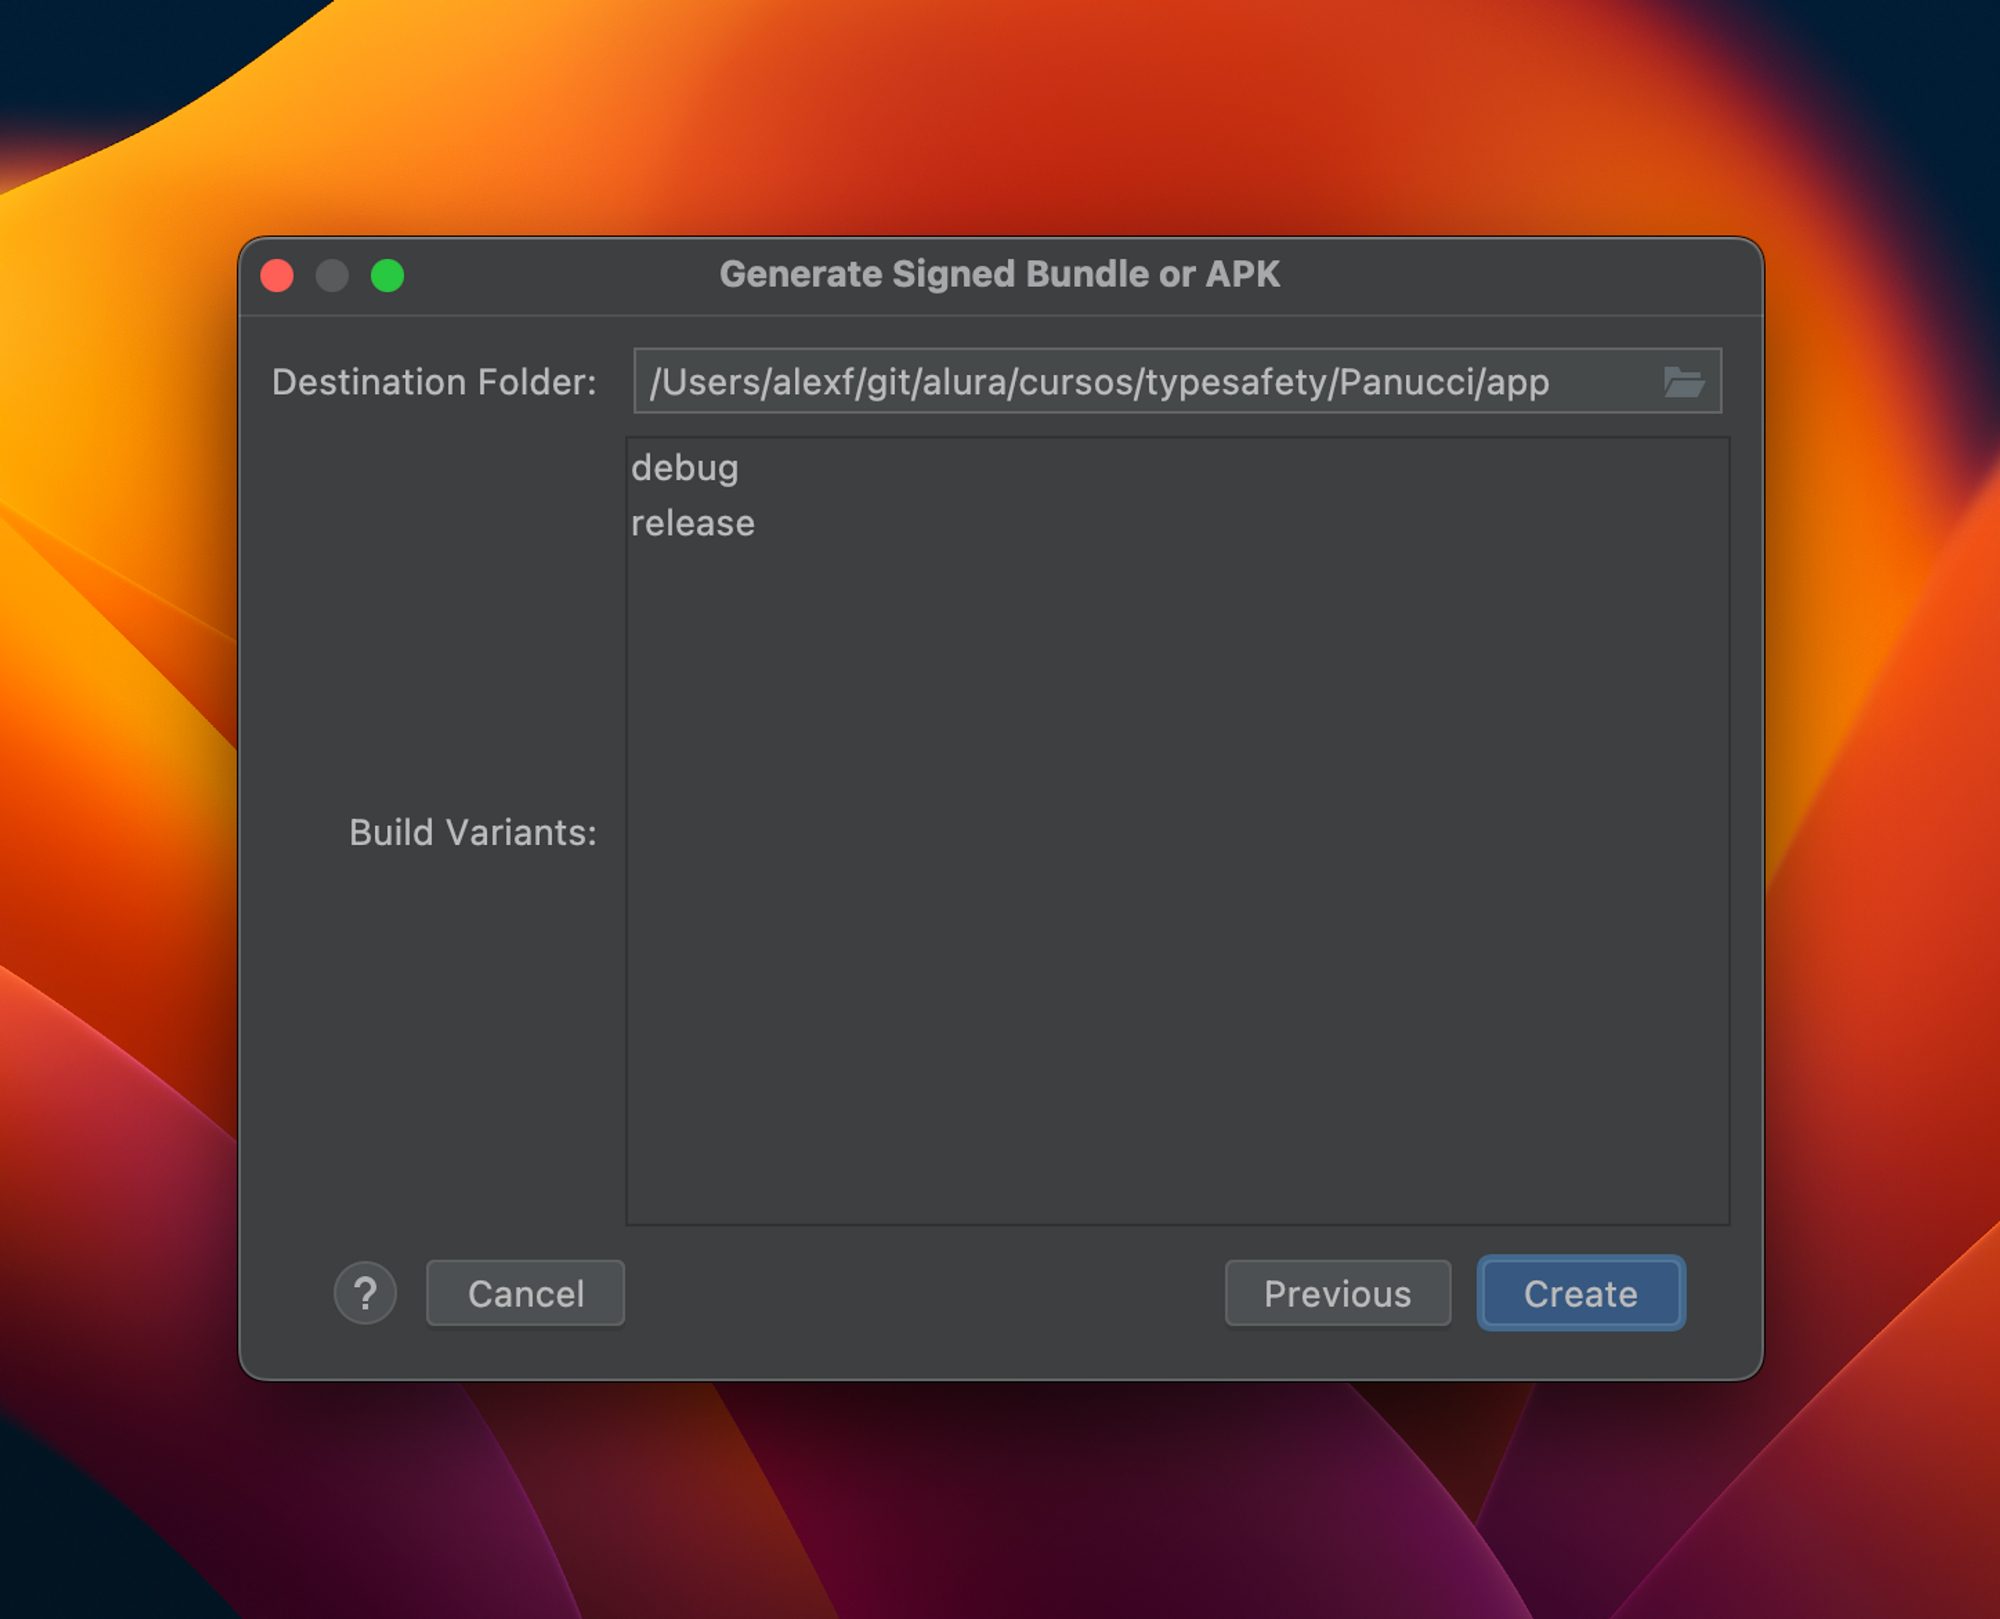 Janela Generate Signed Bundle or APK com os campos Destination Folder e Build Variants, e com os botões Cancel Previous e Create.